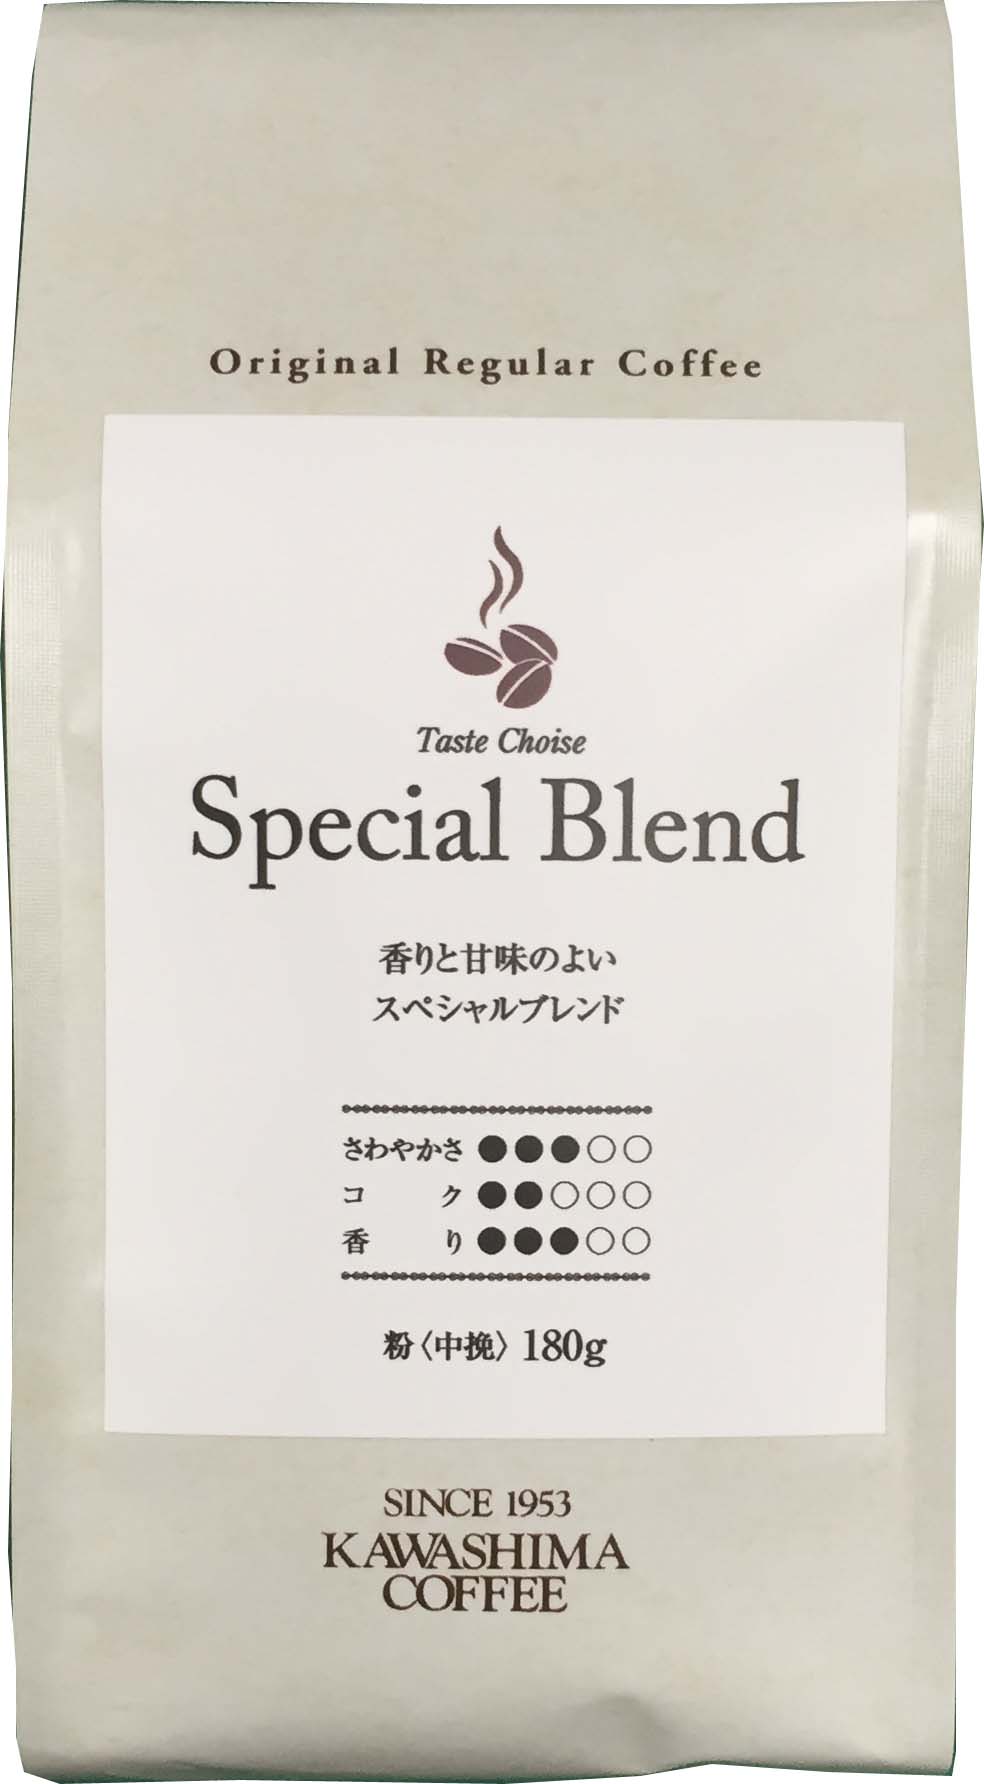 取扱商品 | コーヒー豆の製造、卸売、PB・OEM商品の企画制作 コーヒー乃川島